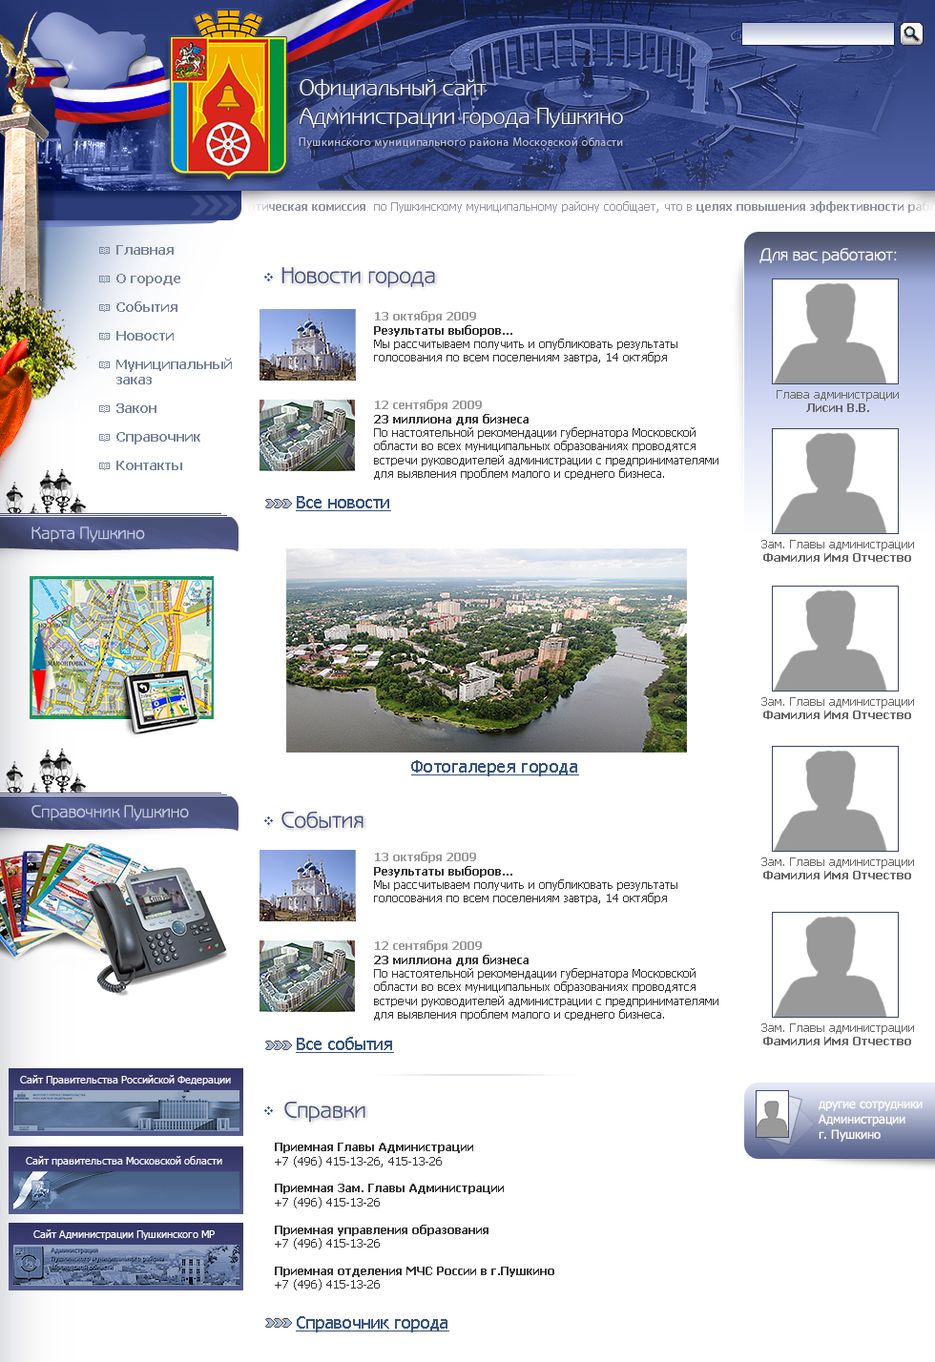 Сайт пушкинской администрации московской области